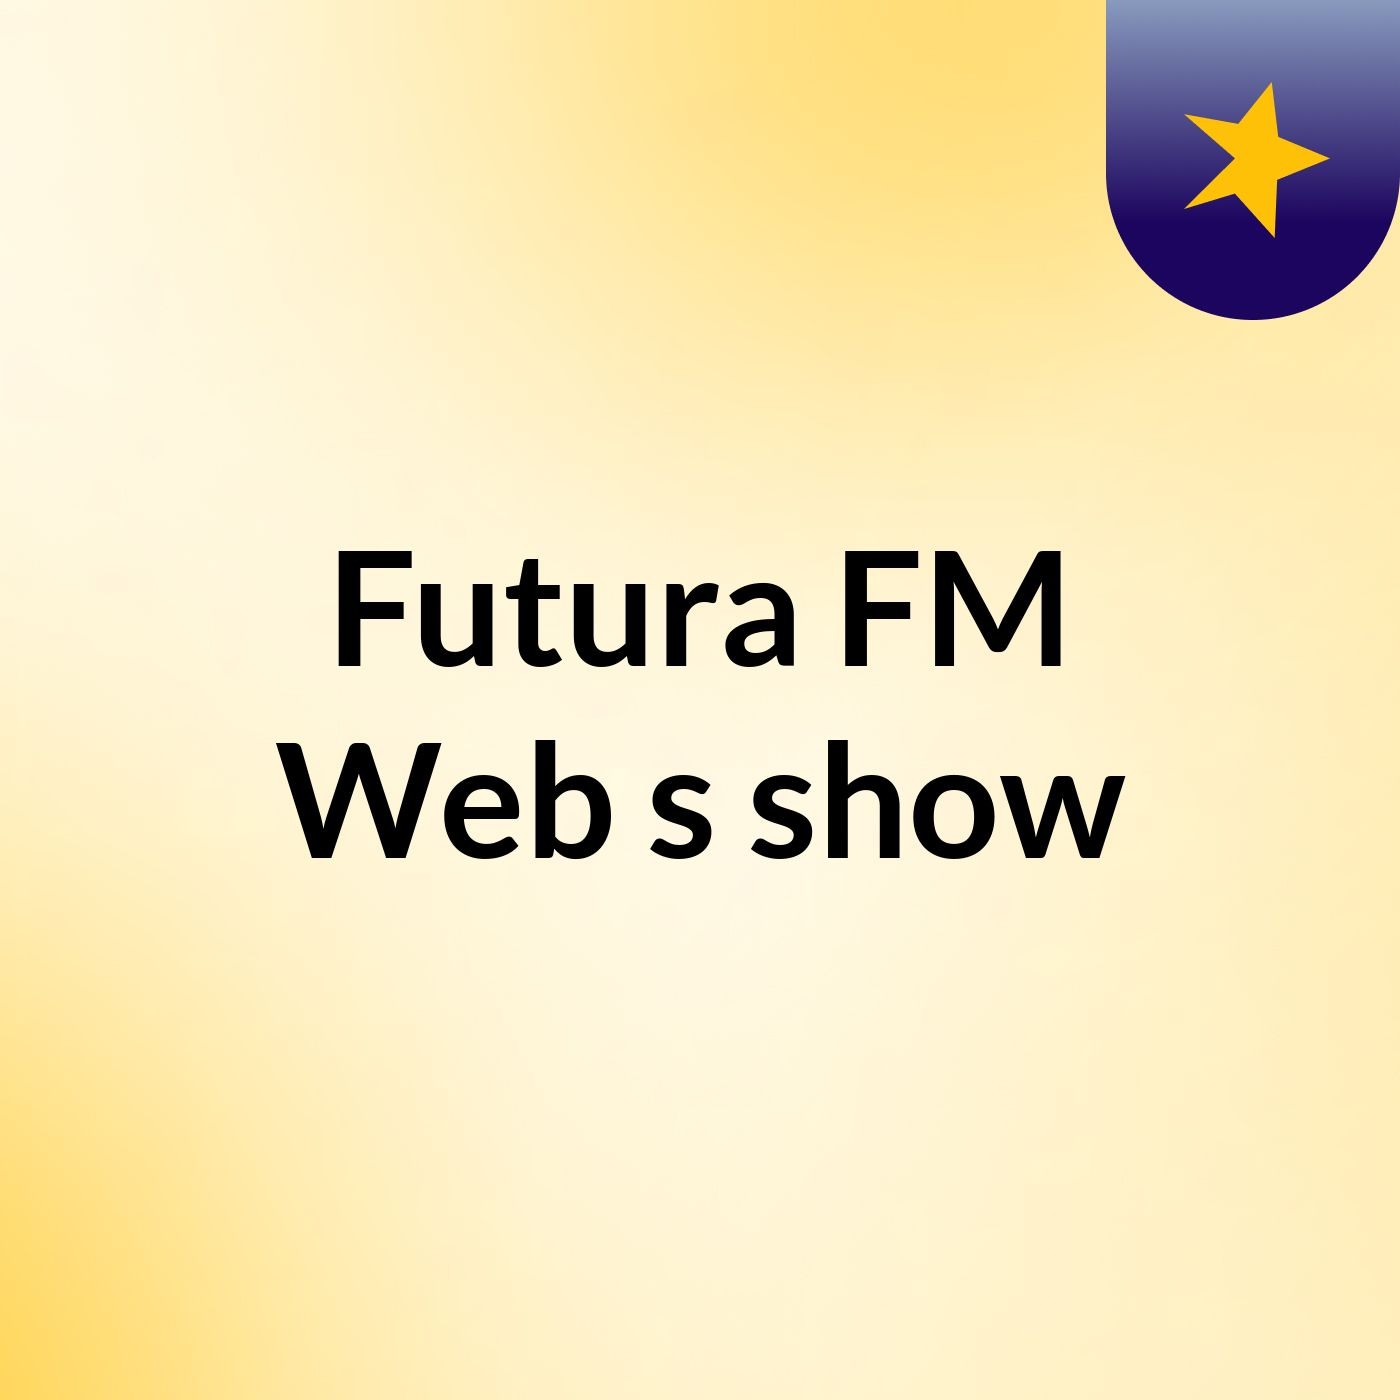 Futura FM Web's show